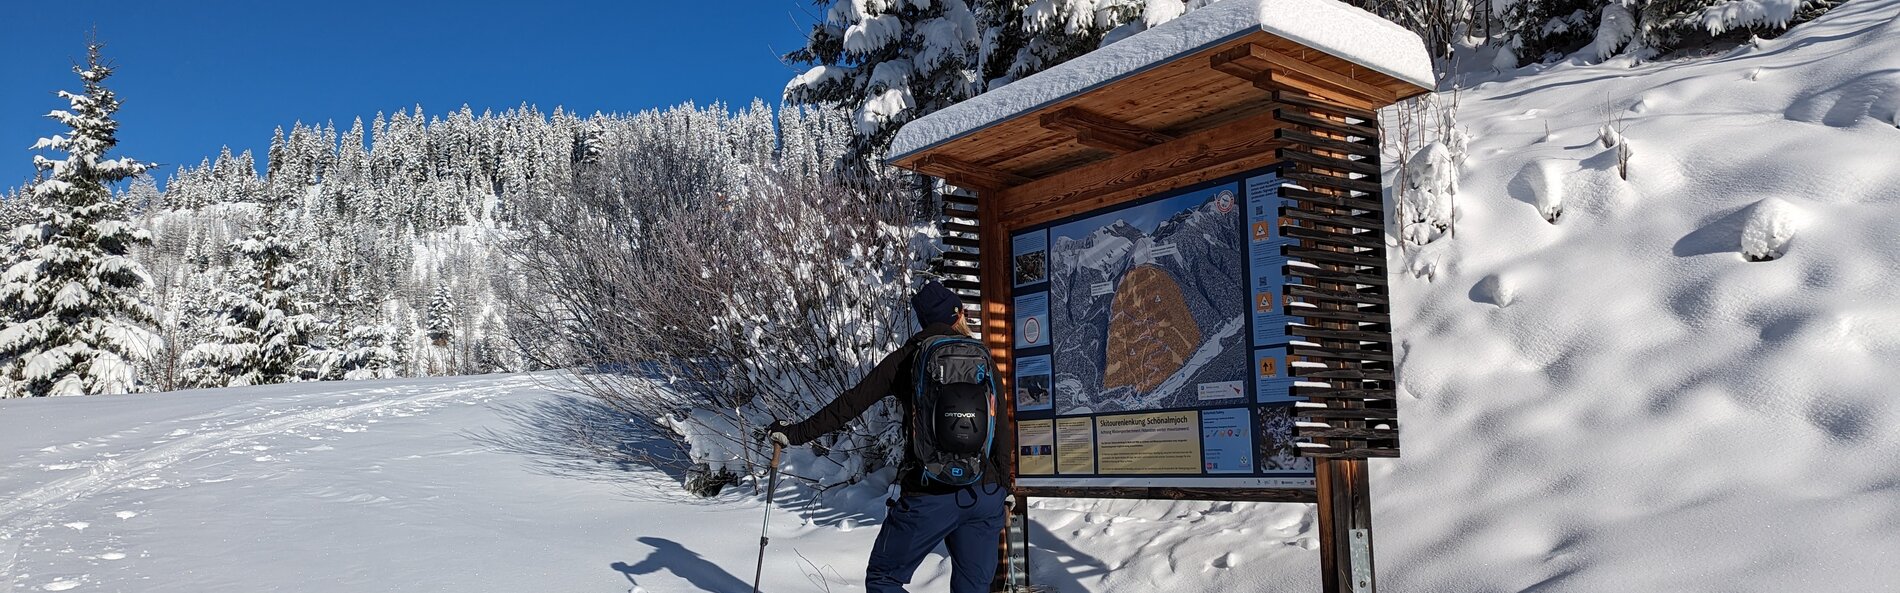 Tief verschneite Landschaft mit eingeschneiten Bäumen, im Vordergrund betrachtet eine Skitourengeherin die Skitouren Infotafel.